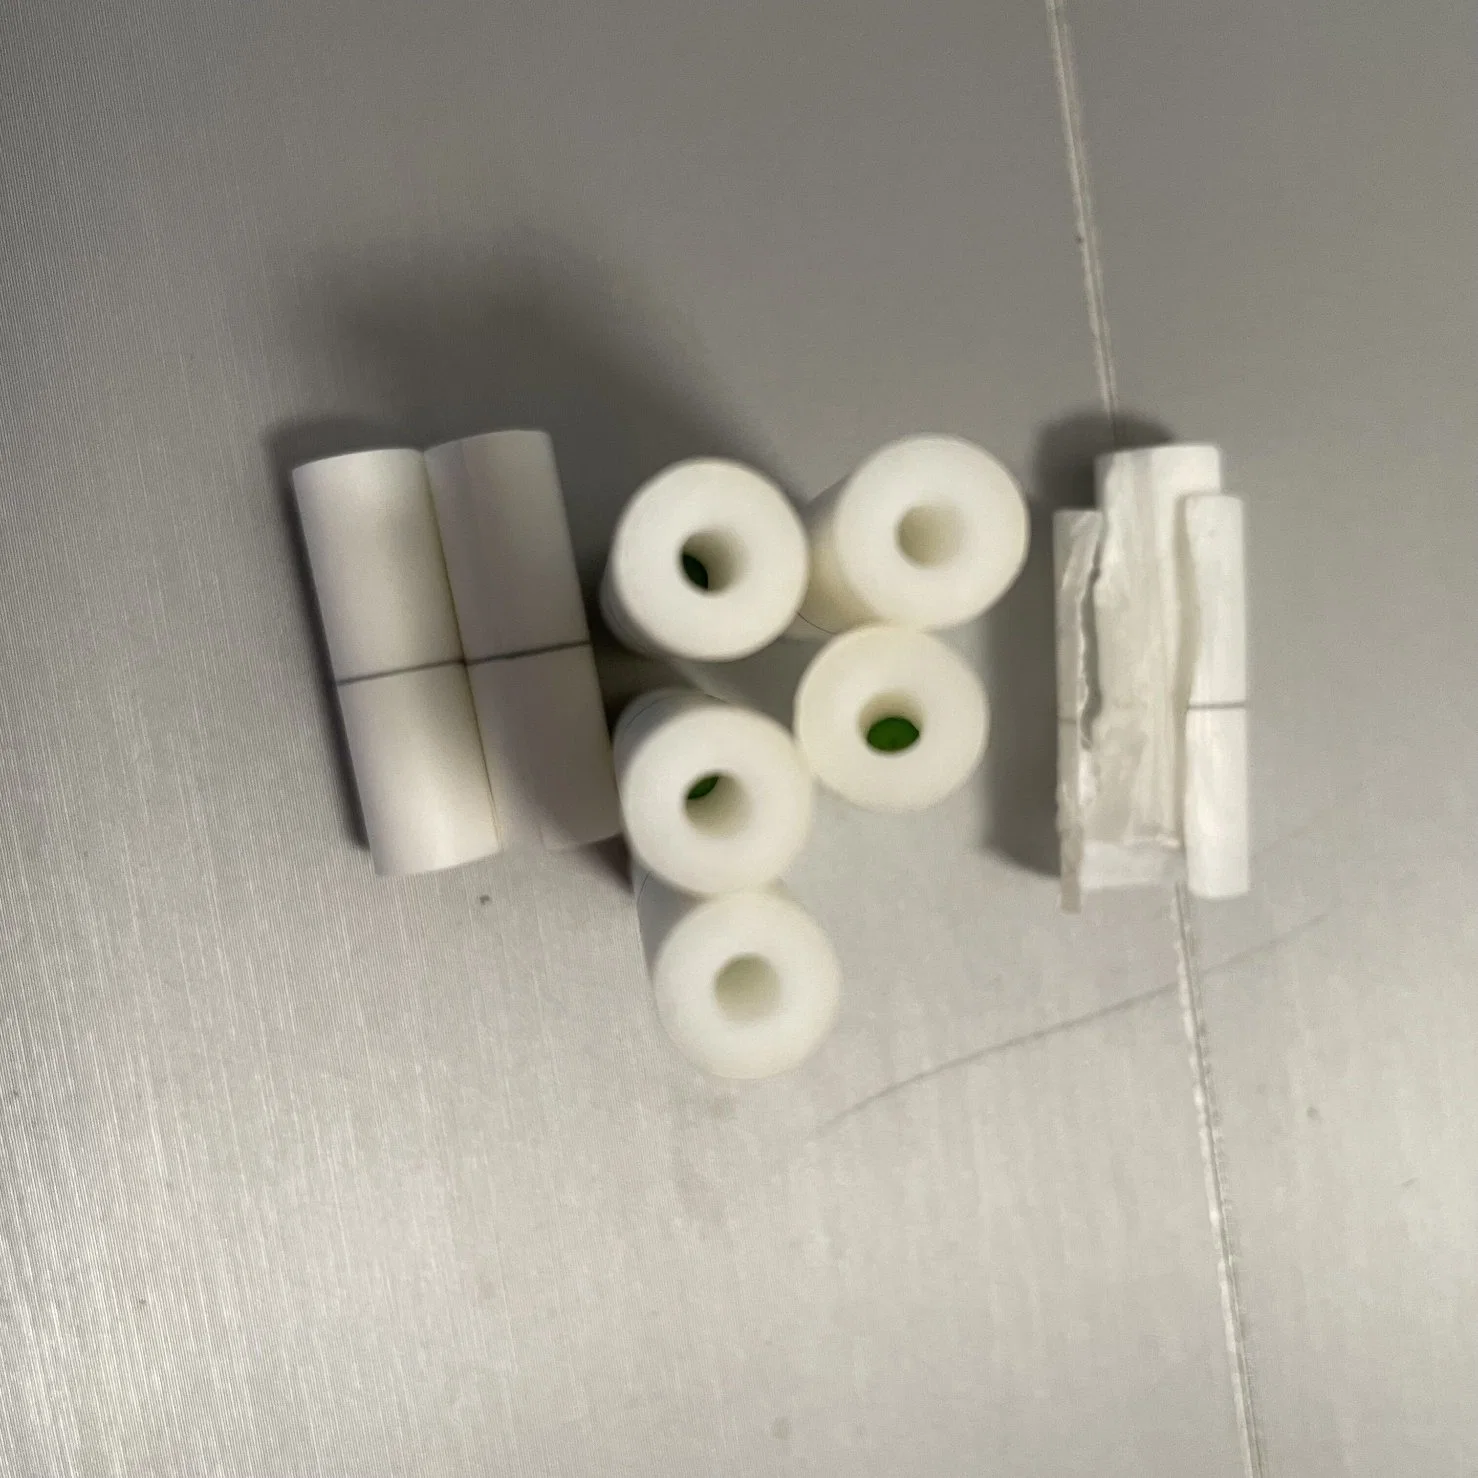 6mm Pre-Rolled filtros de cigarros com orifícios e esferas de diferentes sabores